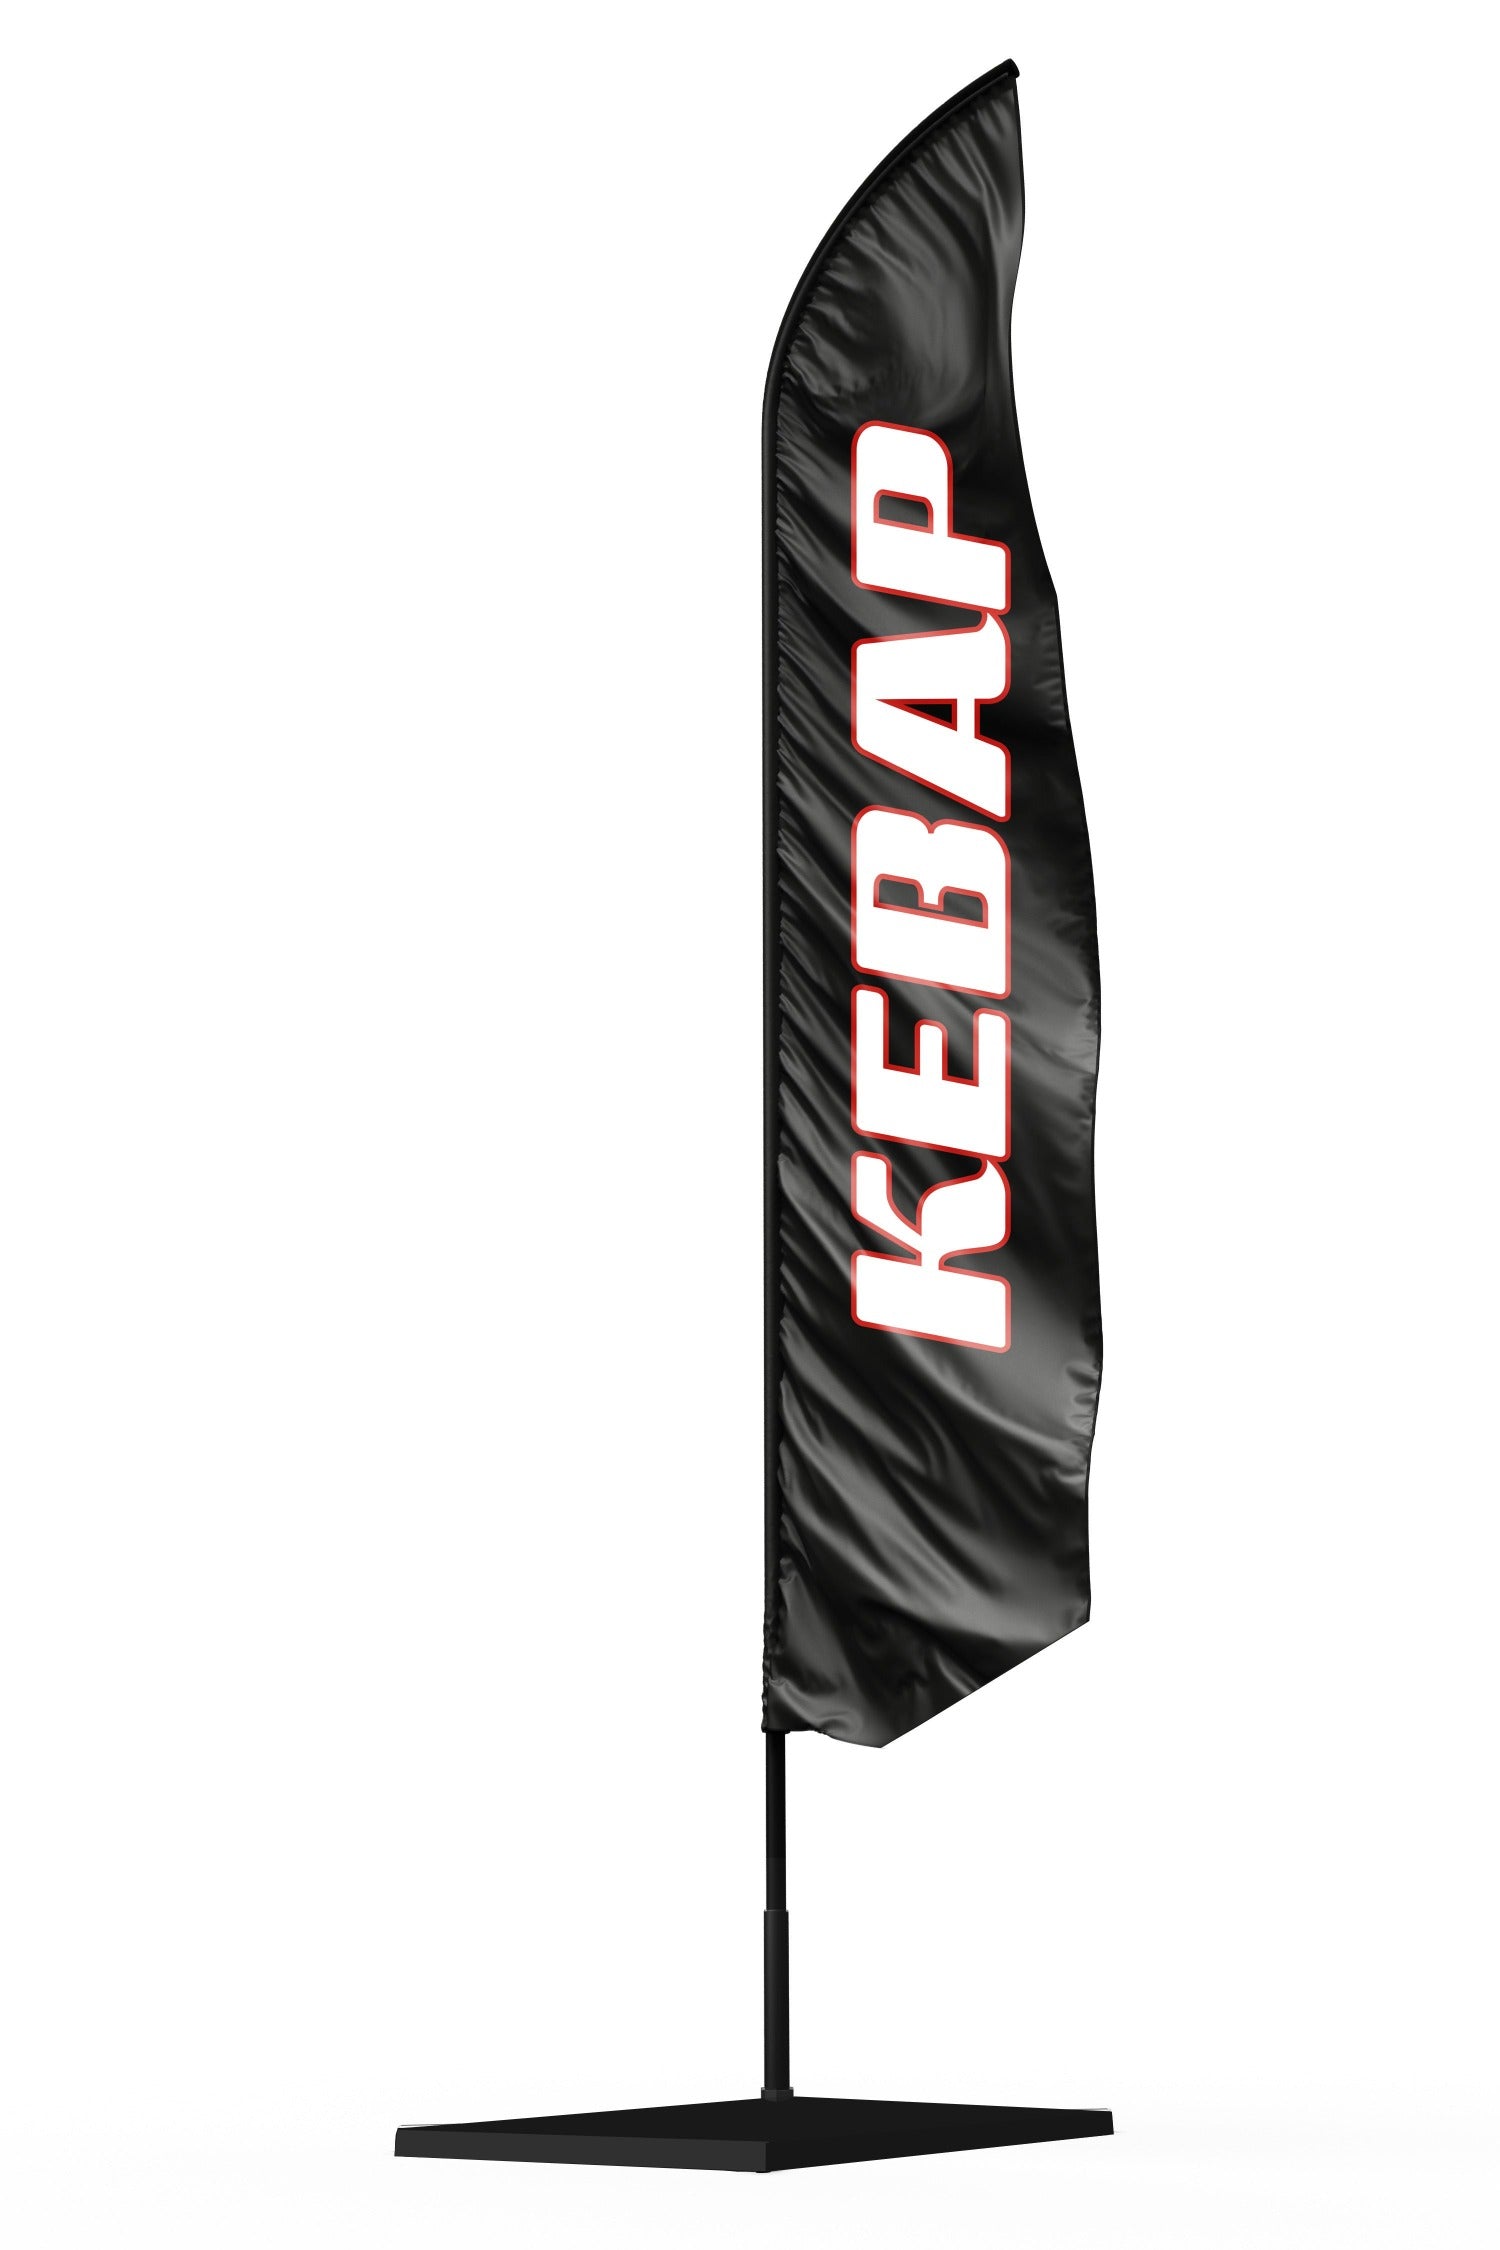 Drapeaux oriflamme publicitaire kebap - H : 6m maxi - + mat +